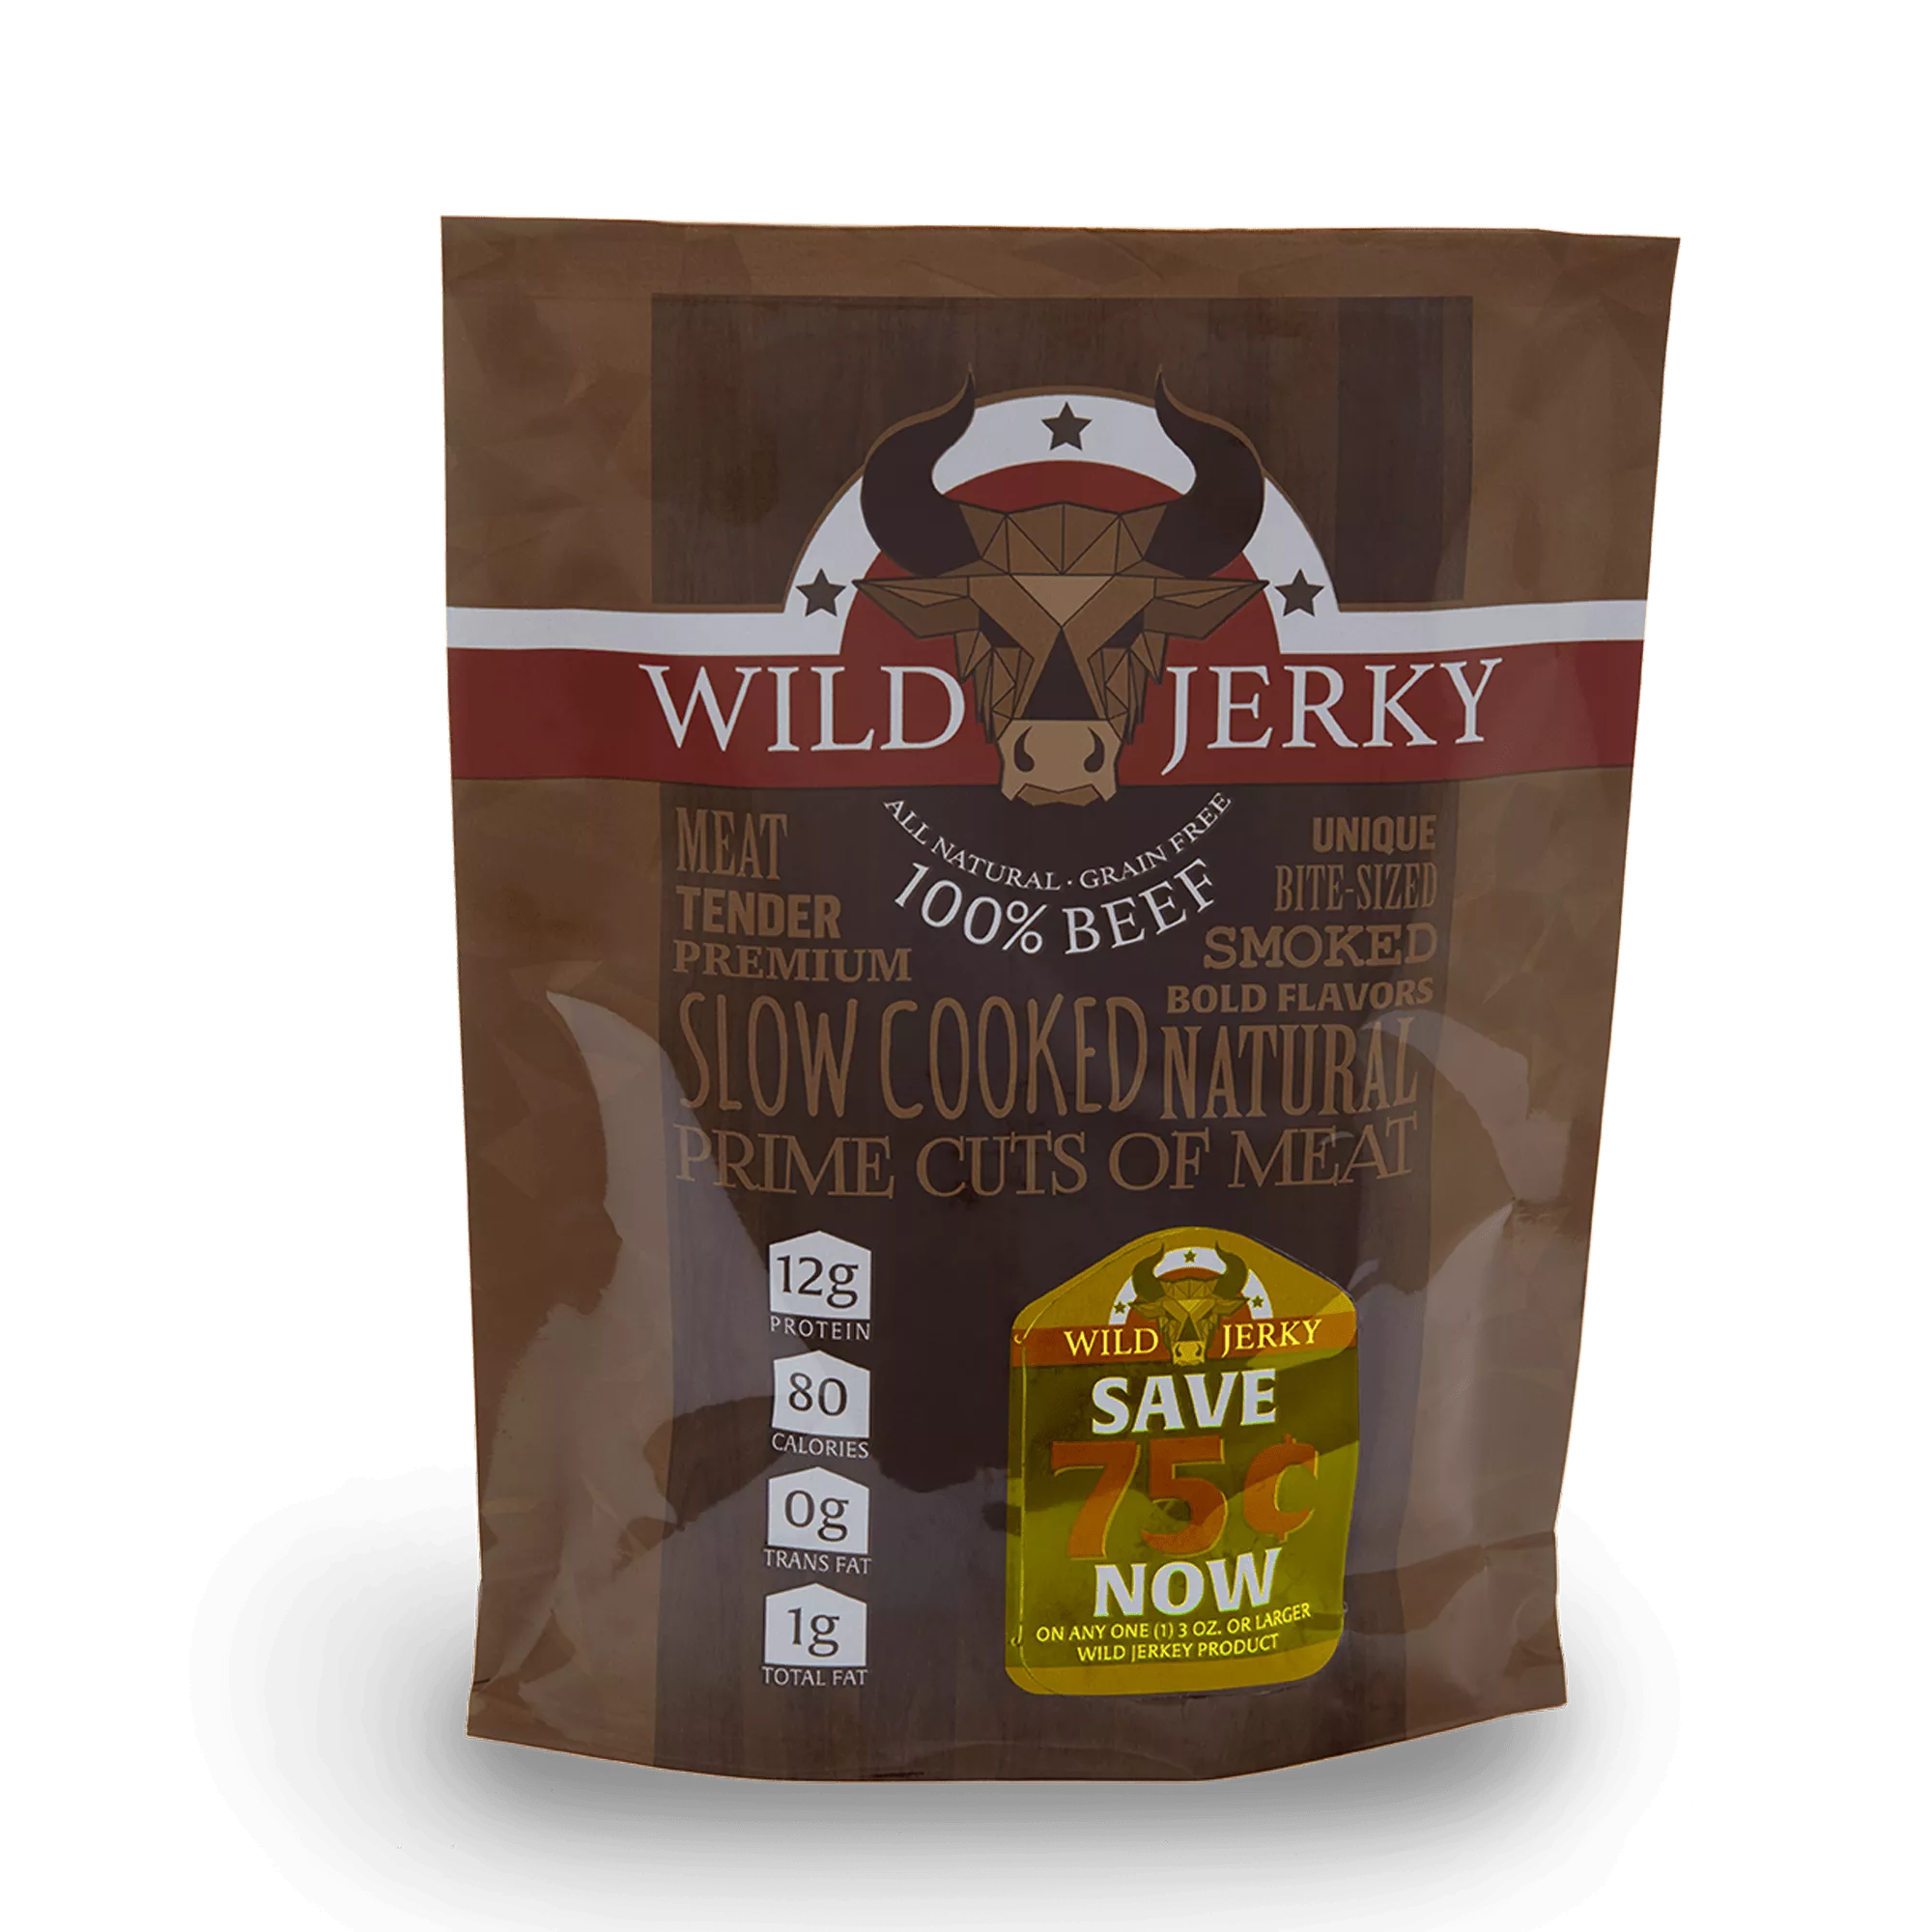 PromoPeel jerky packaging